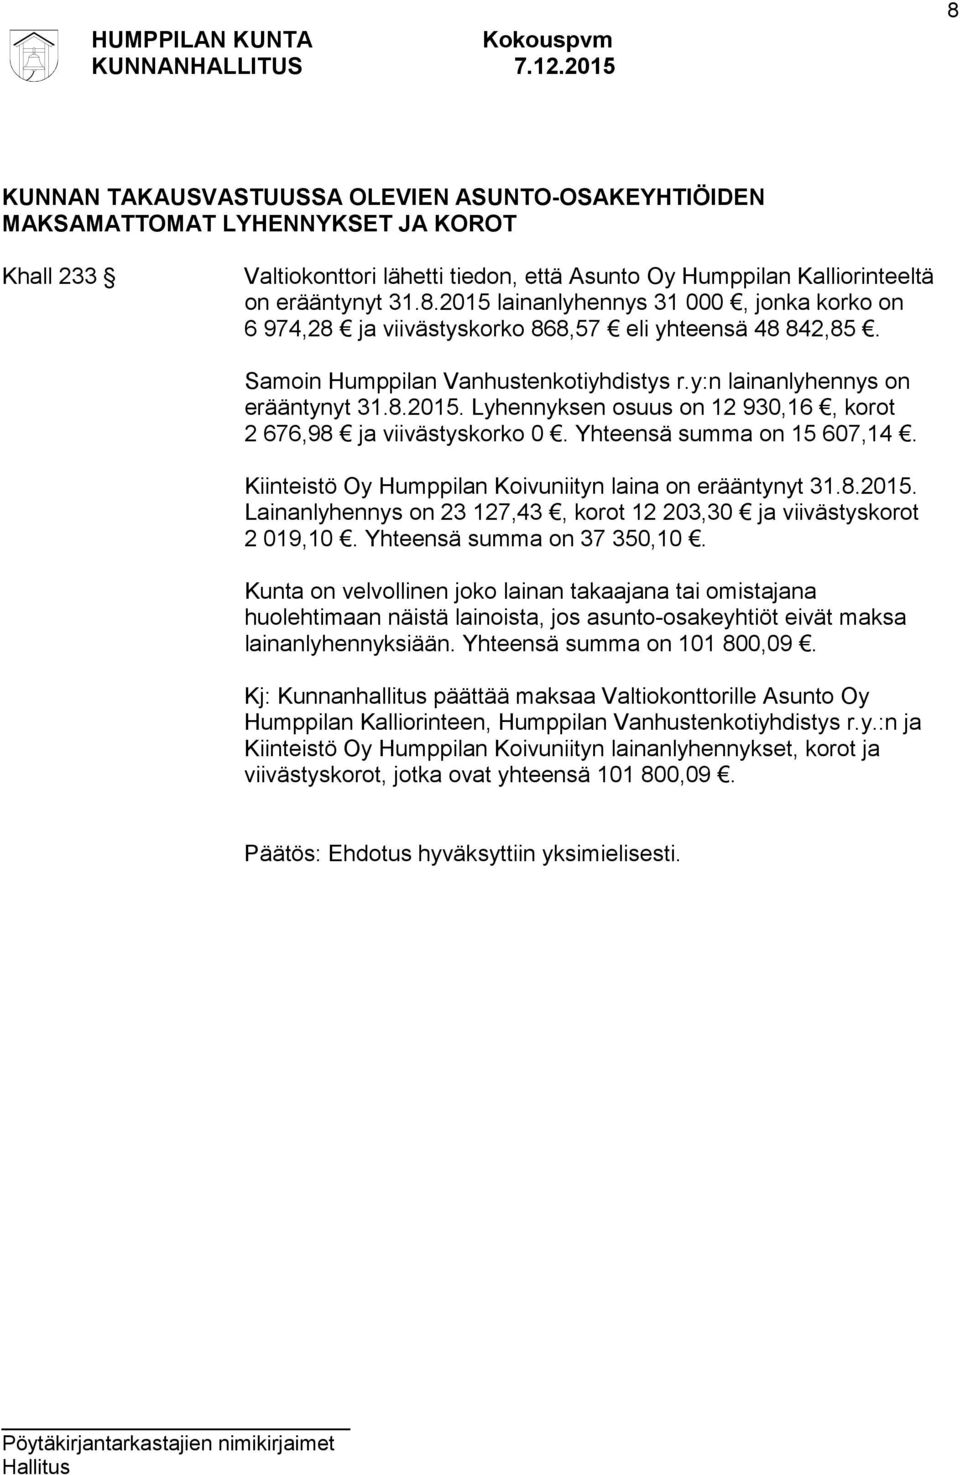 Kiinteistö Oy Humppilan Koivuniityn laina on erääntynyt 31.8.2015. Lainanlyhennys on 23 127,43, korot 12 203,30 ja viivästyskorot 2 019,10. Yhteensä summa on 37 350,10.